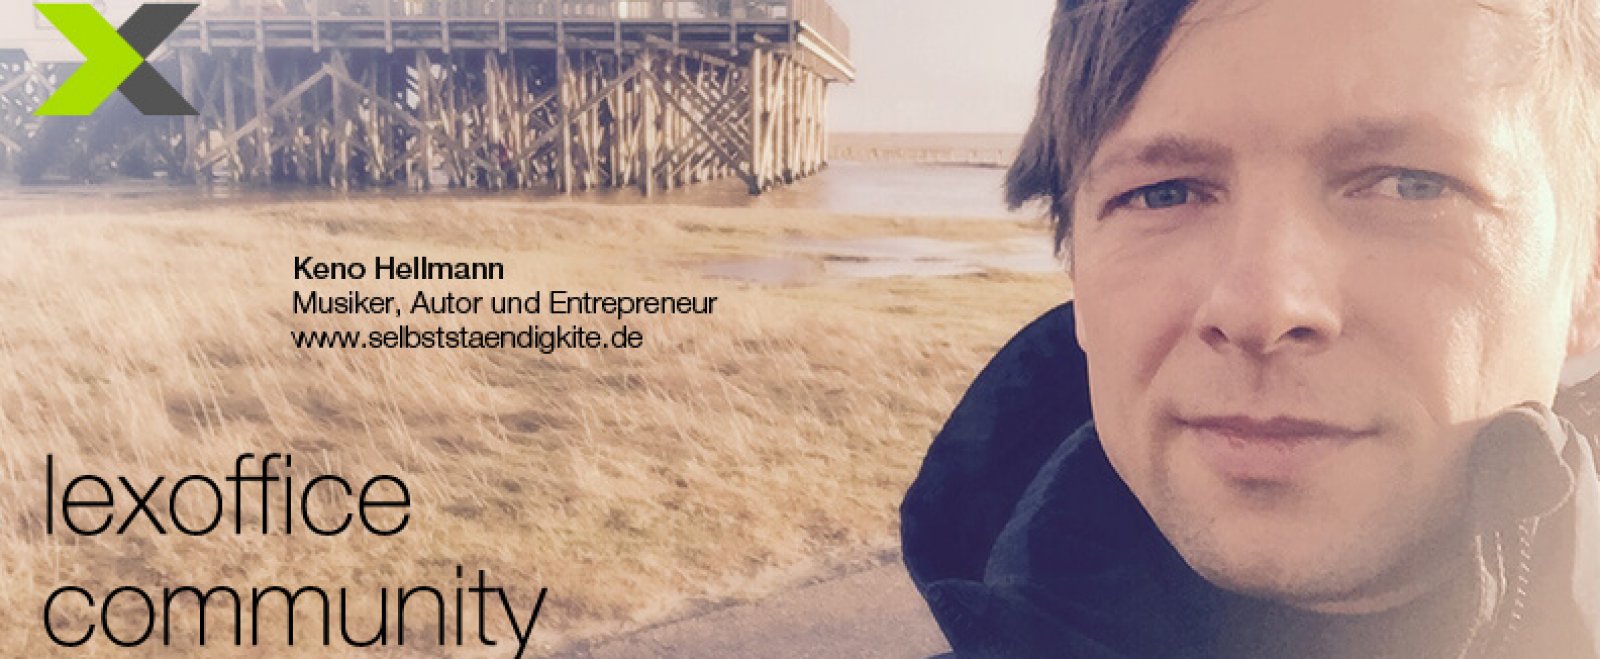 lexoffice Community: User-Interview (20) Keno Hellmann von selbststaendigkite.de